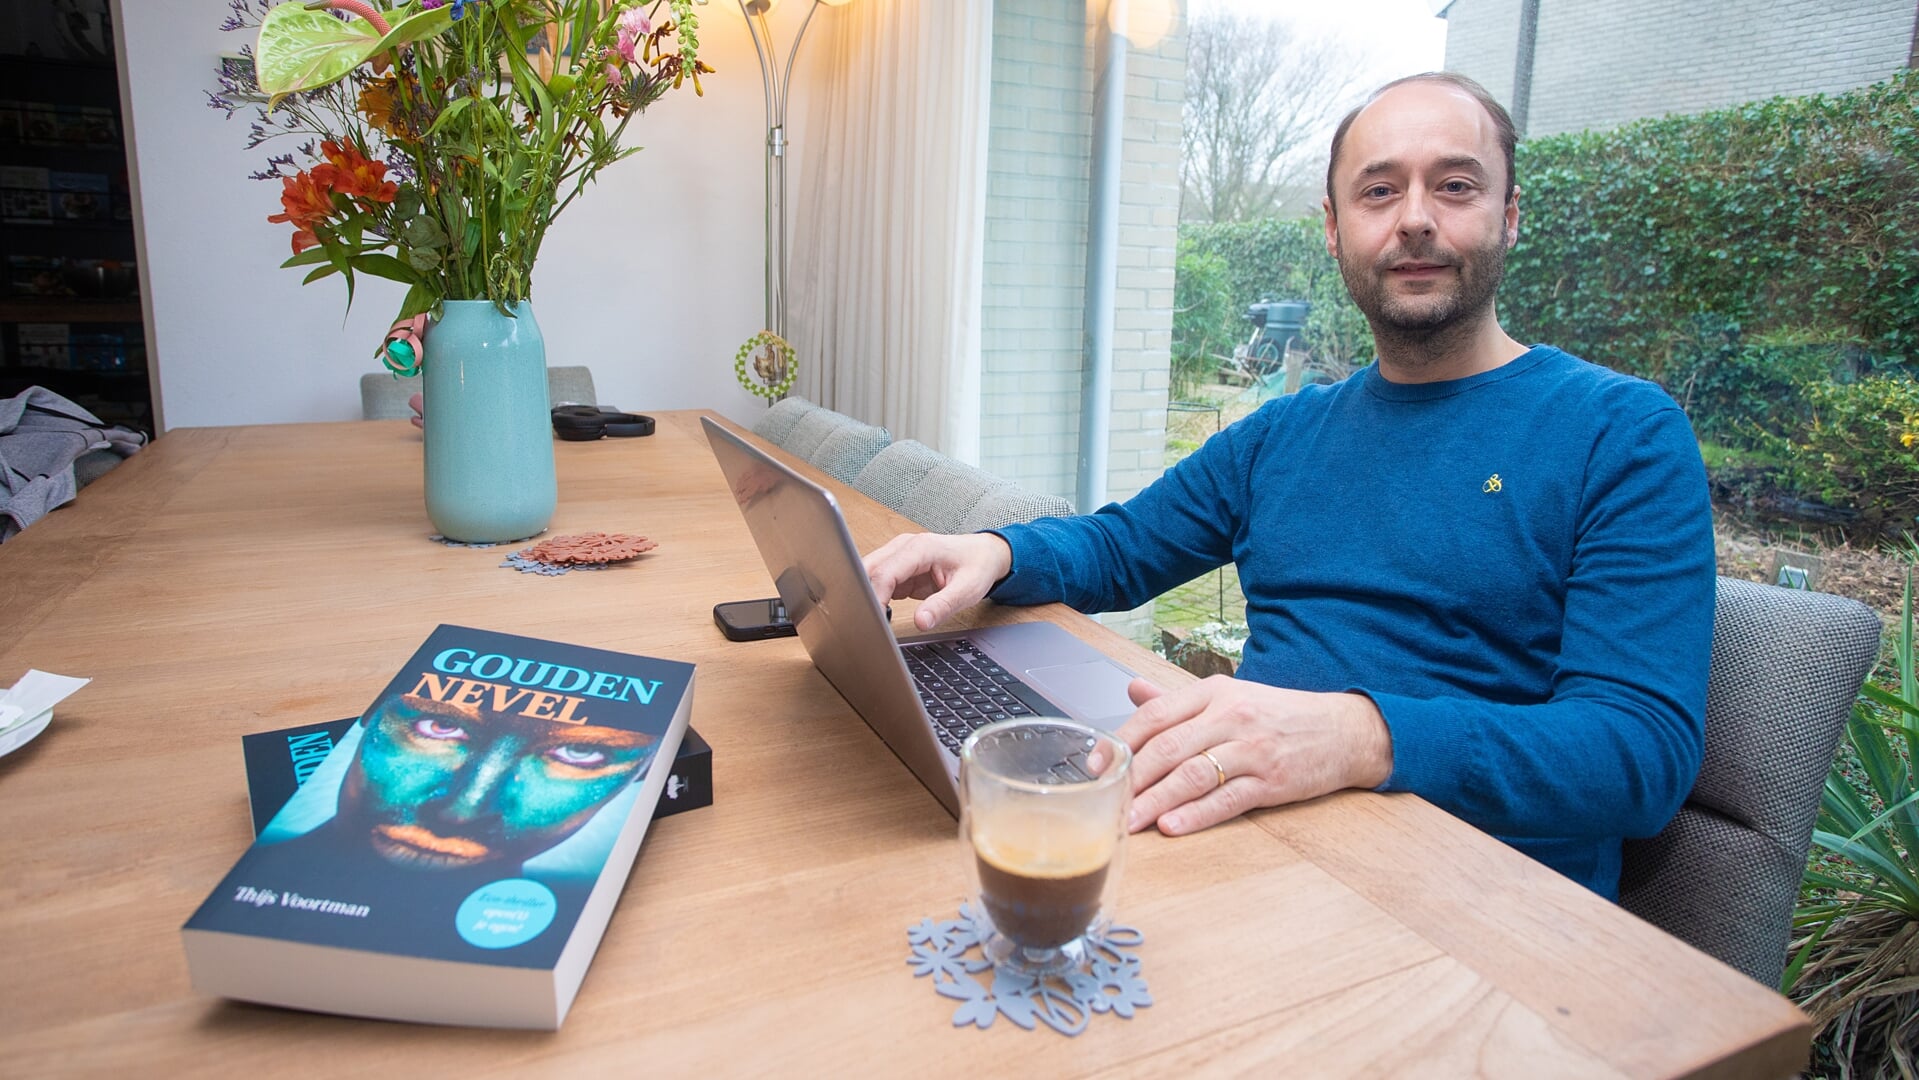 Thijs Voortman met zijn boek 'Gouden Nevel'.